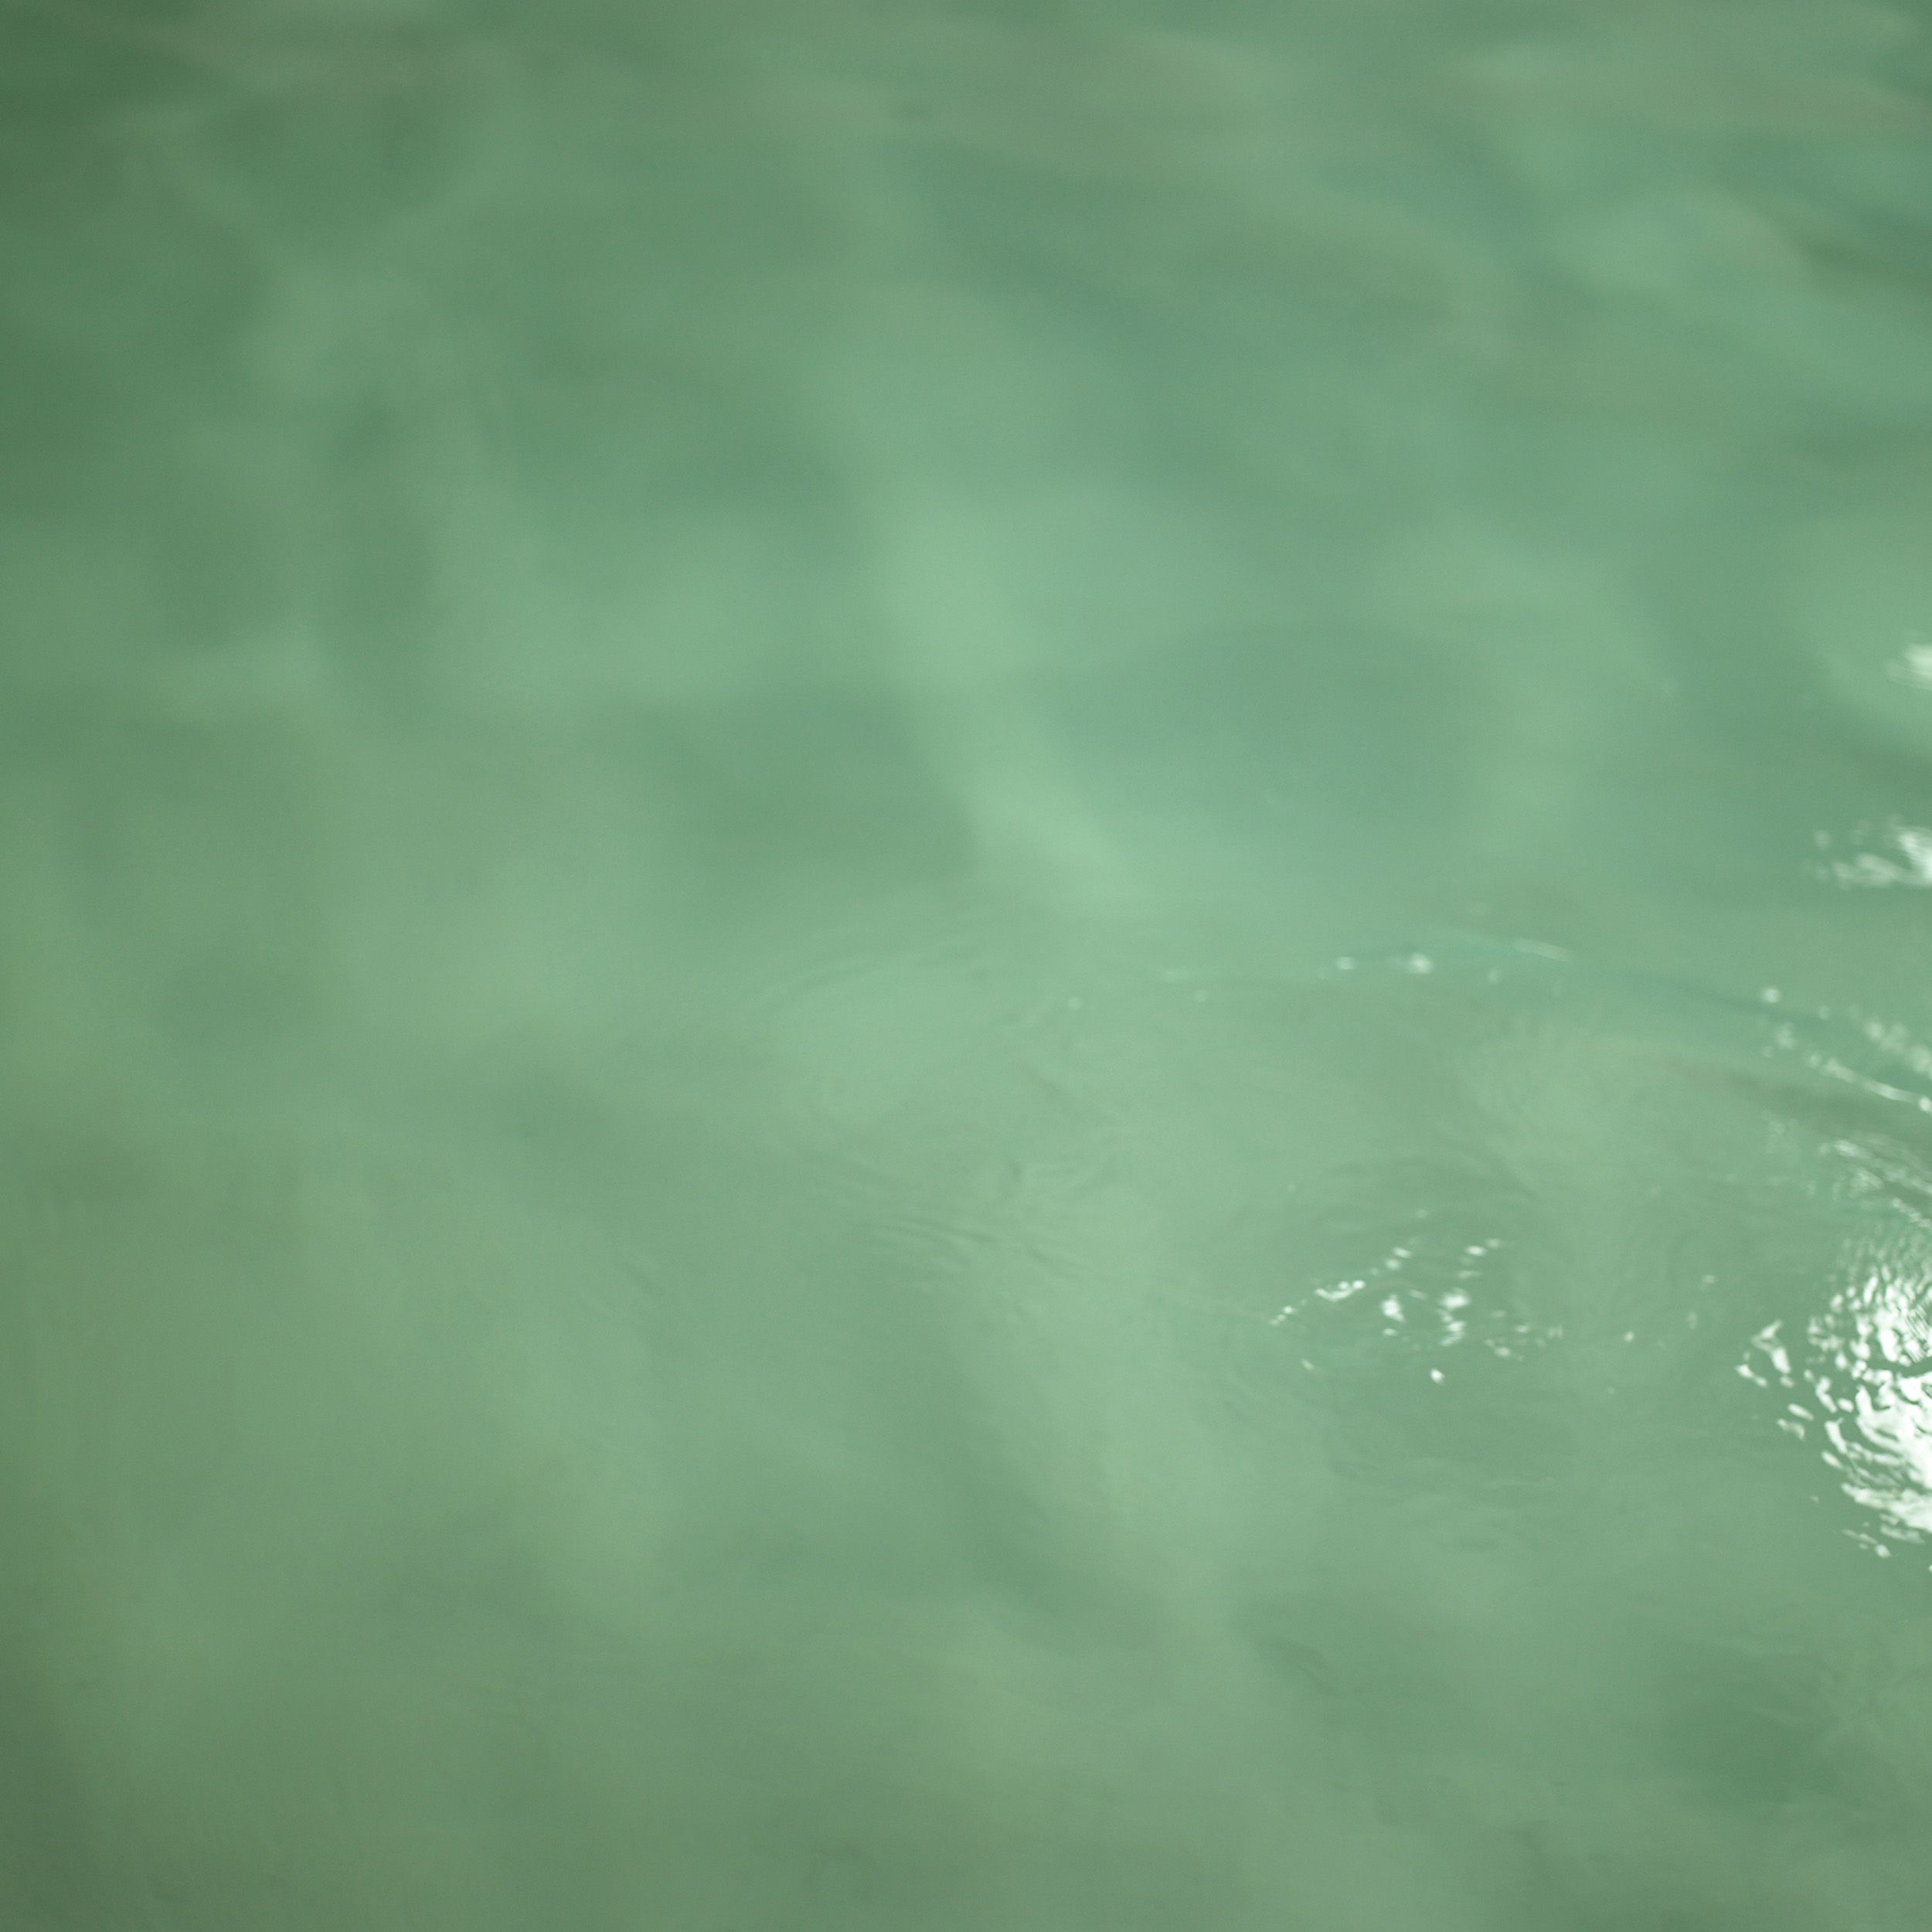 Eau trouble de piscine - © Shutterstock